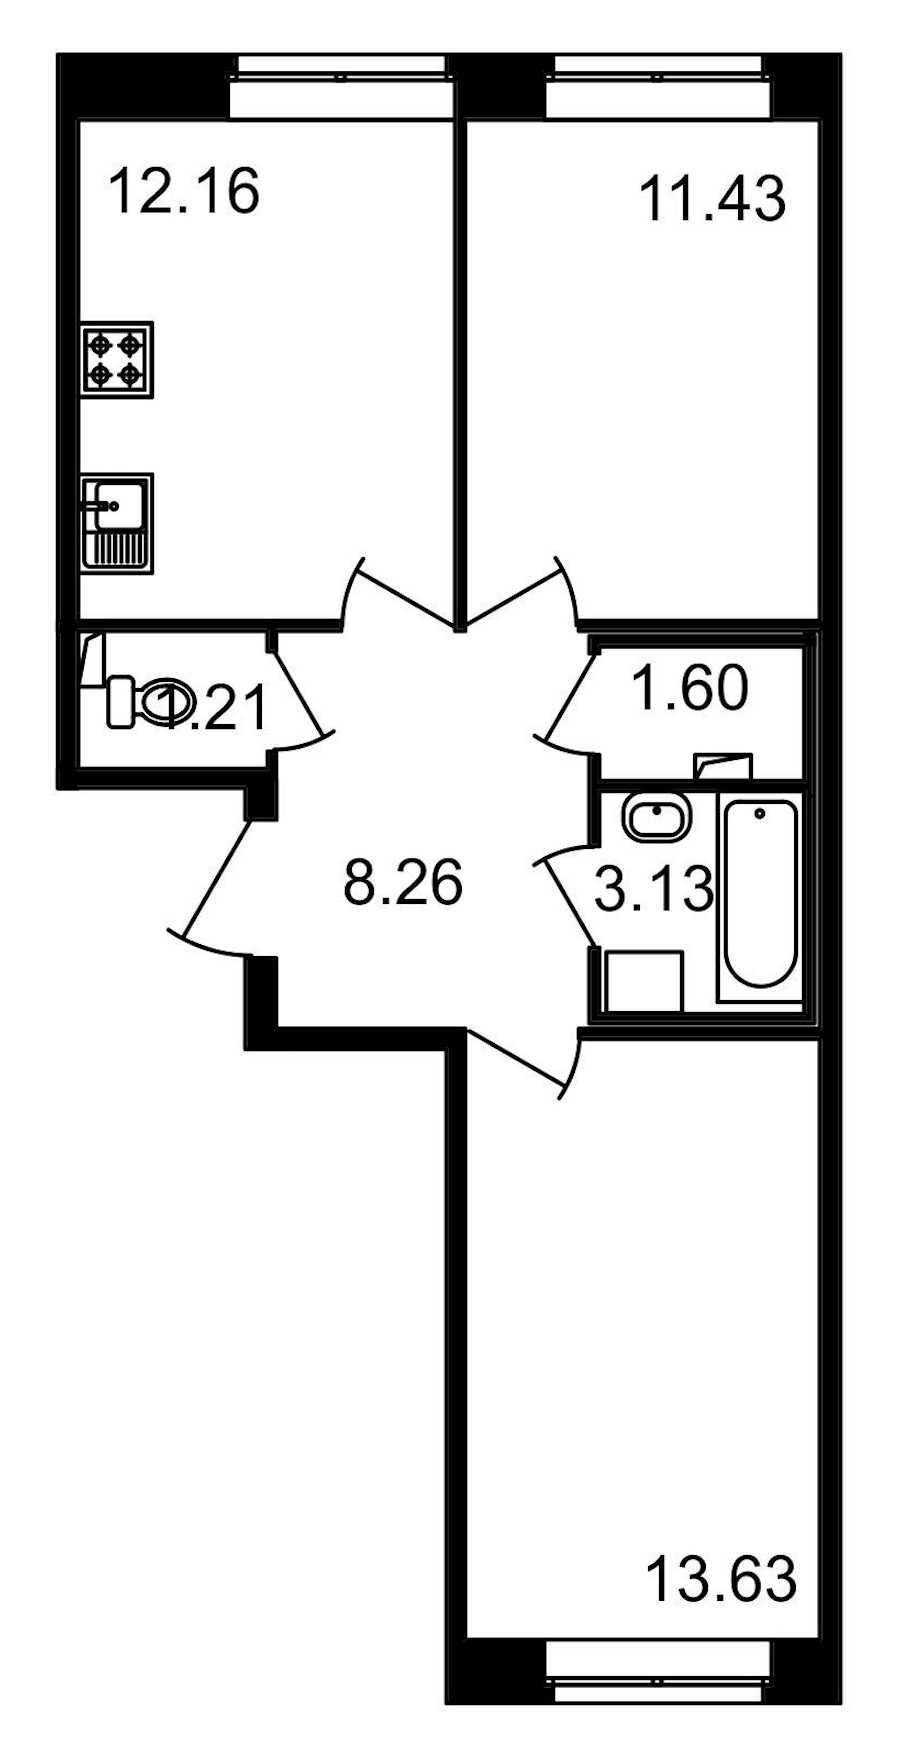 Двухкомнатная квартира в : площадь 51.42 м2 , этаж: 1 – купить в Санкт-Петербурге